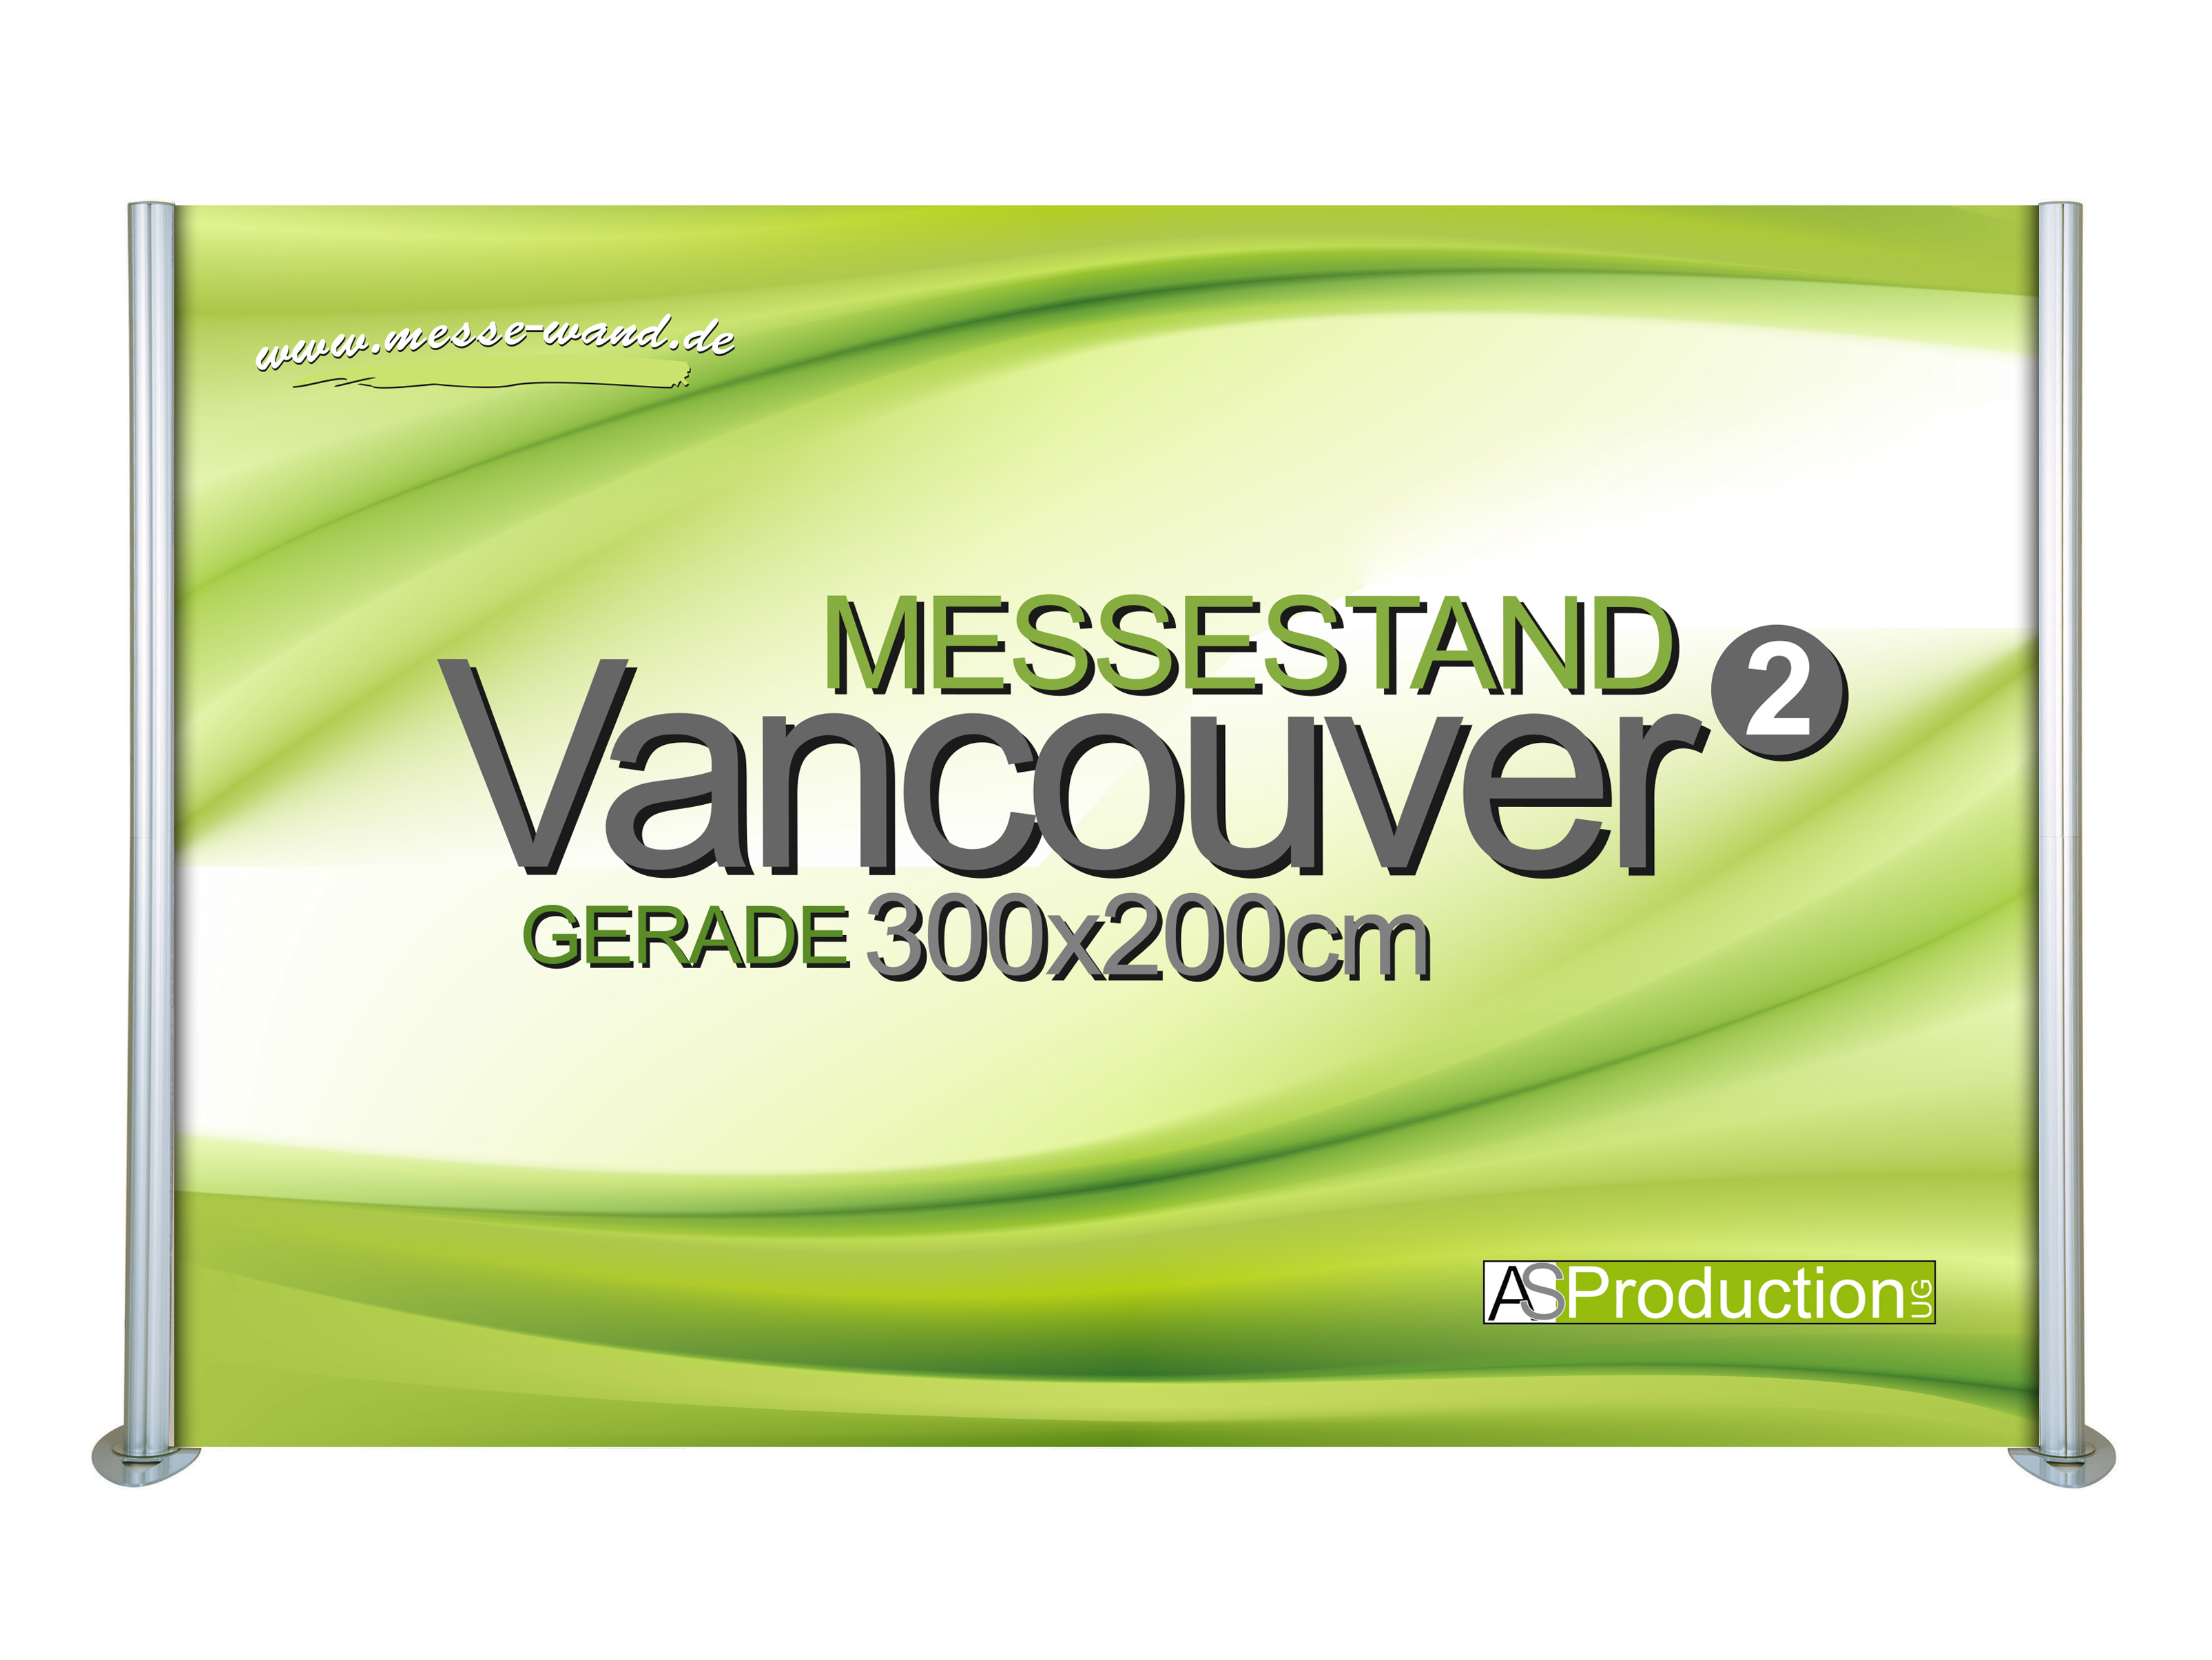 Messestand Vancouver 2 Gerade 300 x 200 cm